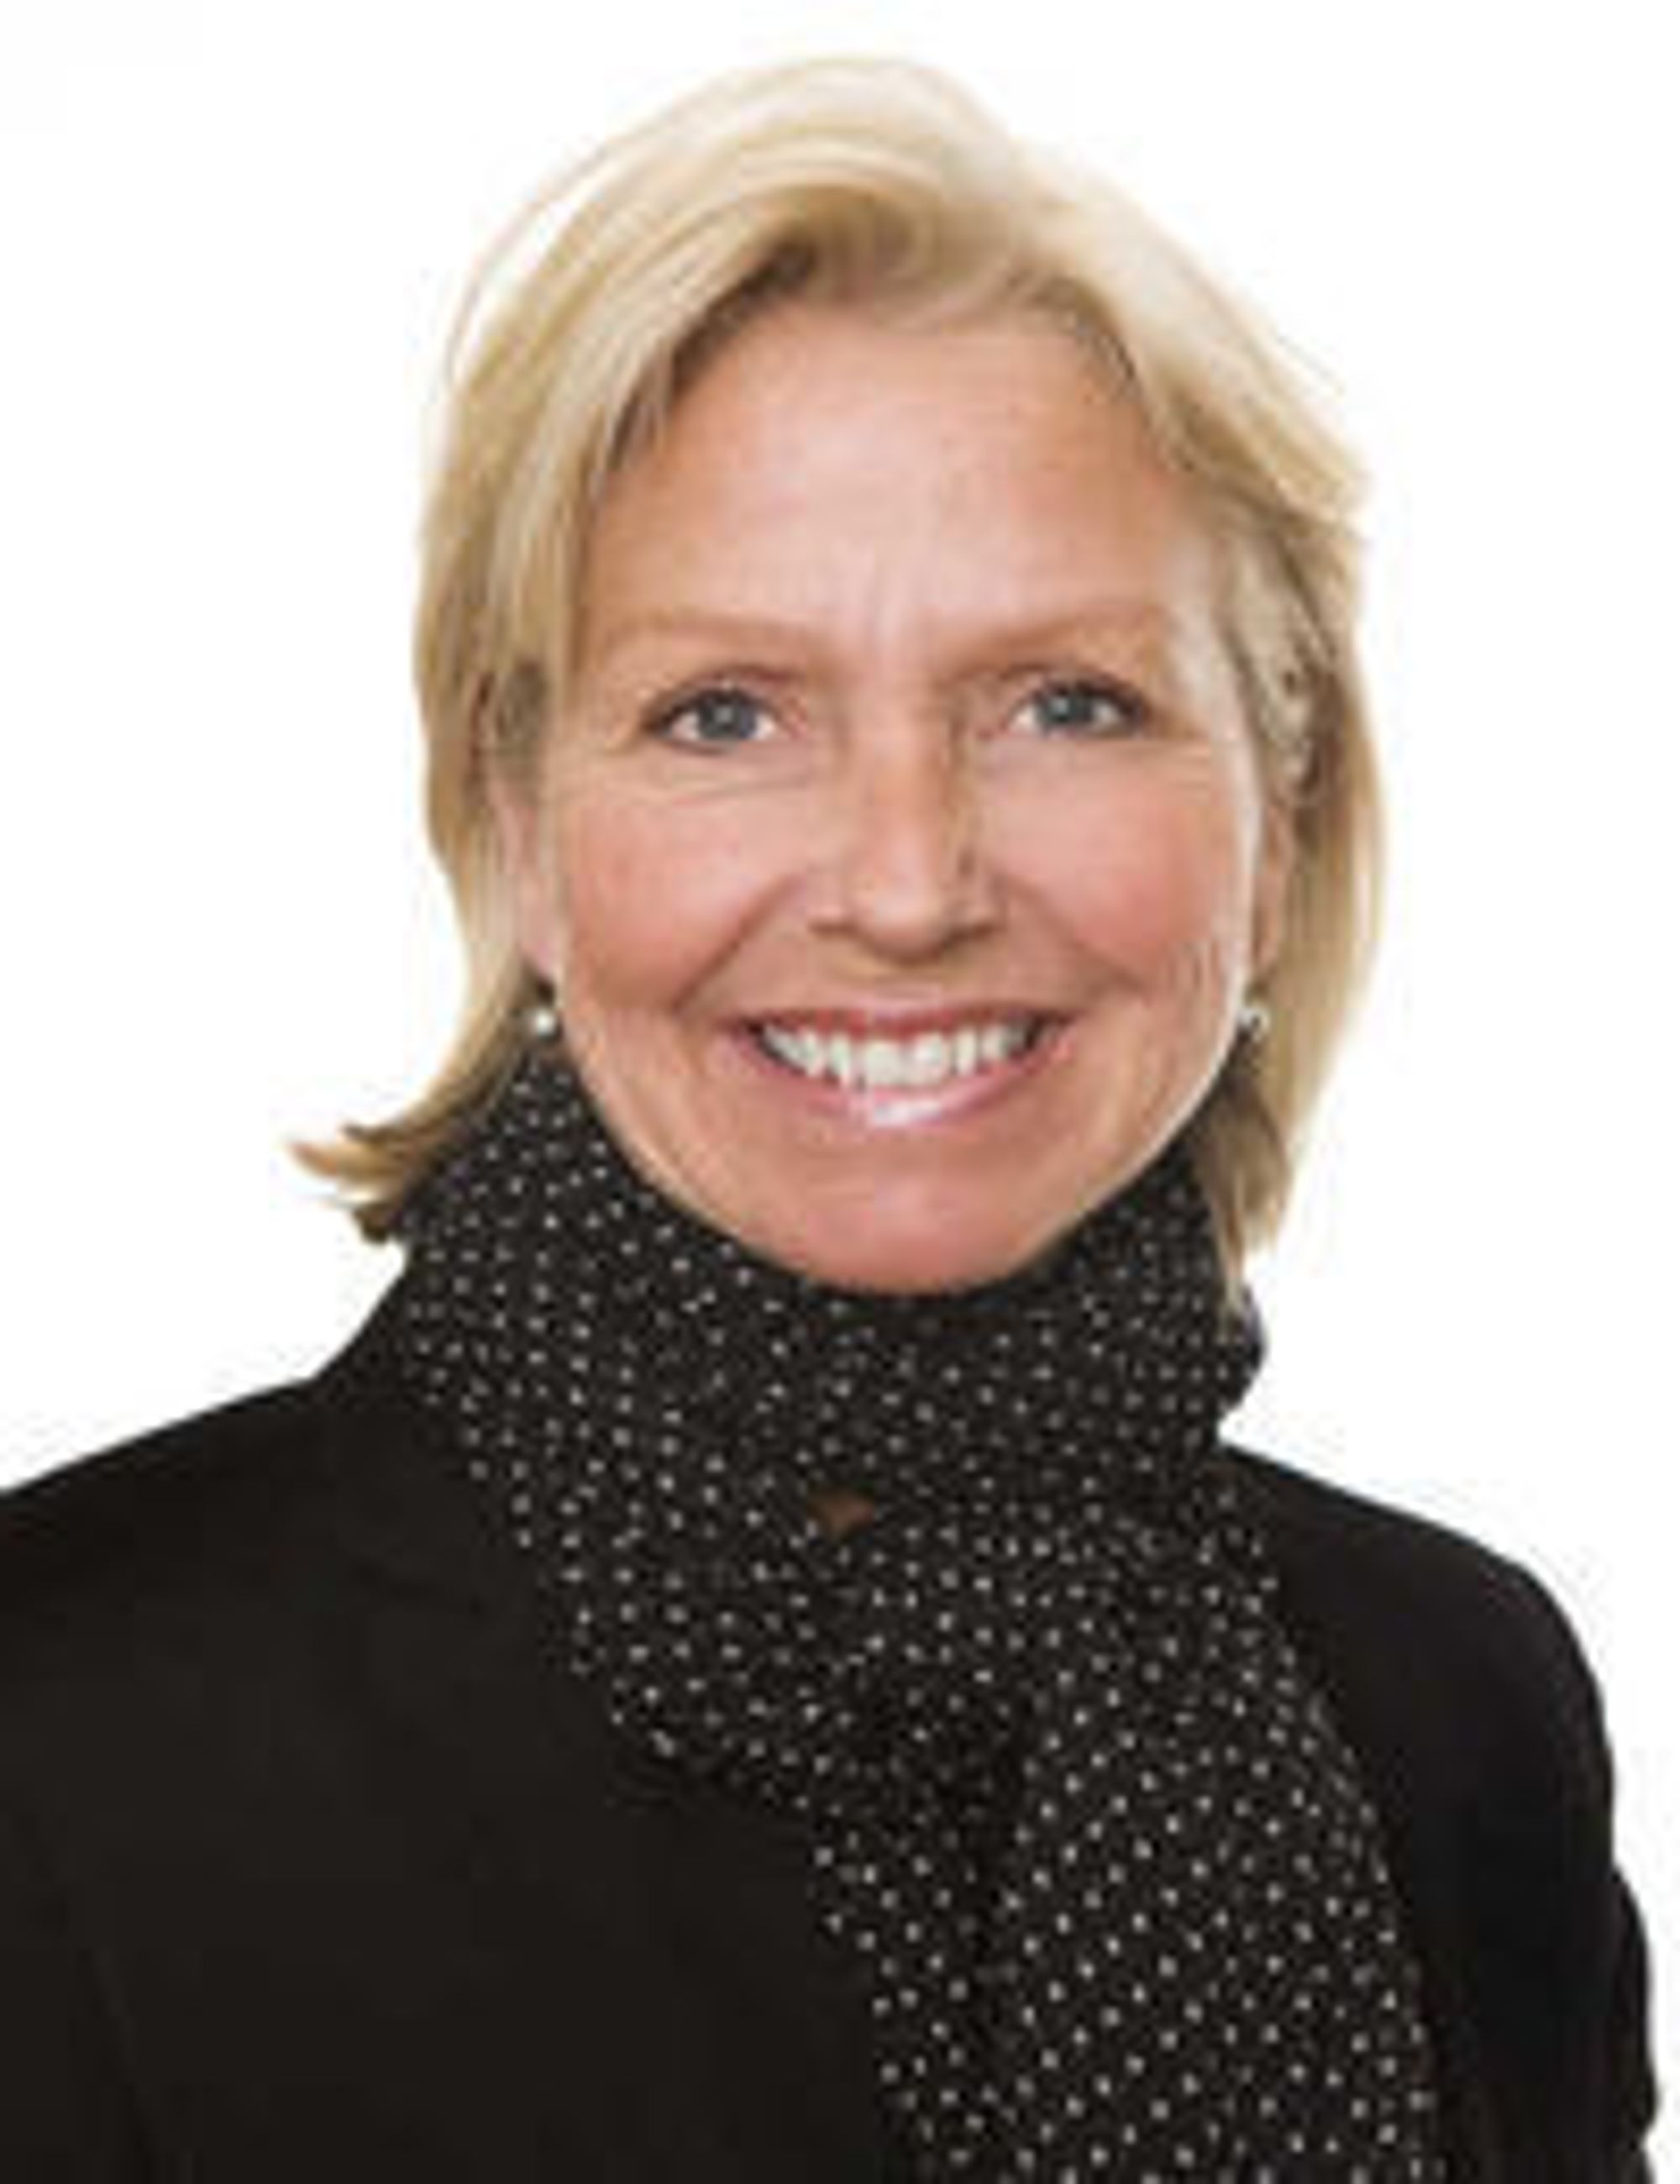 Fra 2004 til 2008 var Berit Kjøll divisjonsdirektør i Telenor, med ansvar for mobil, bredbånd og telefoni til det norske personmarkedet.